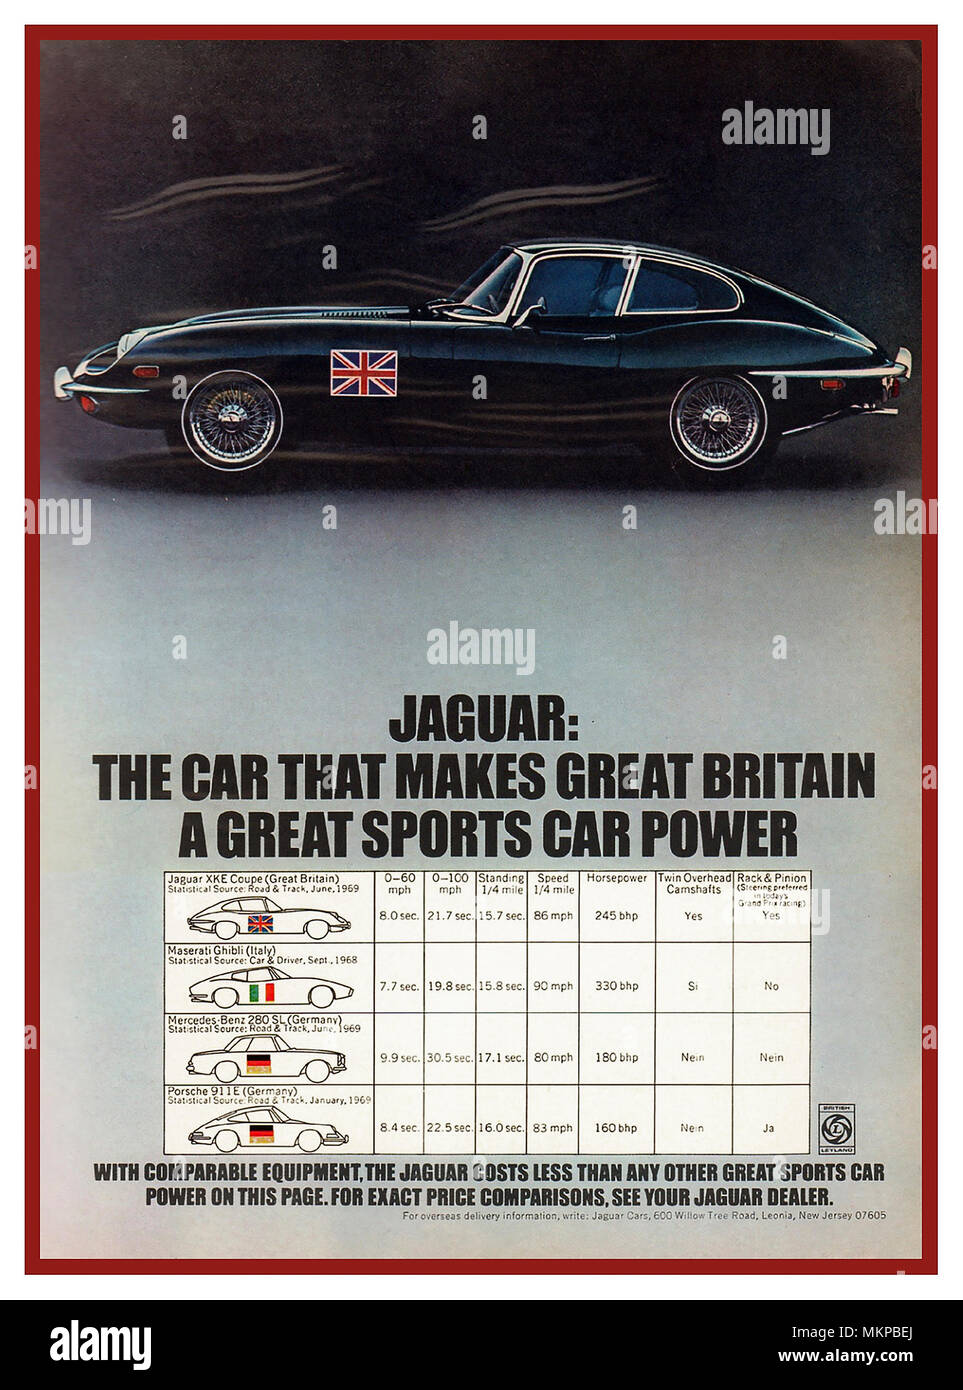 1969 E-type Jaguar coupe BMC annuncio pubblicitario confrontando Jaguar E-Type specifiche con altre vetture sport " La vettura che fa la Gran Bretagna una grande vettura sportiva potenza" Foto Stock